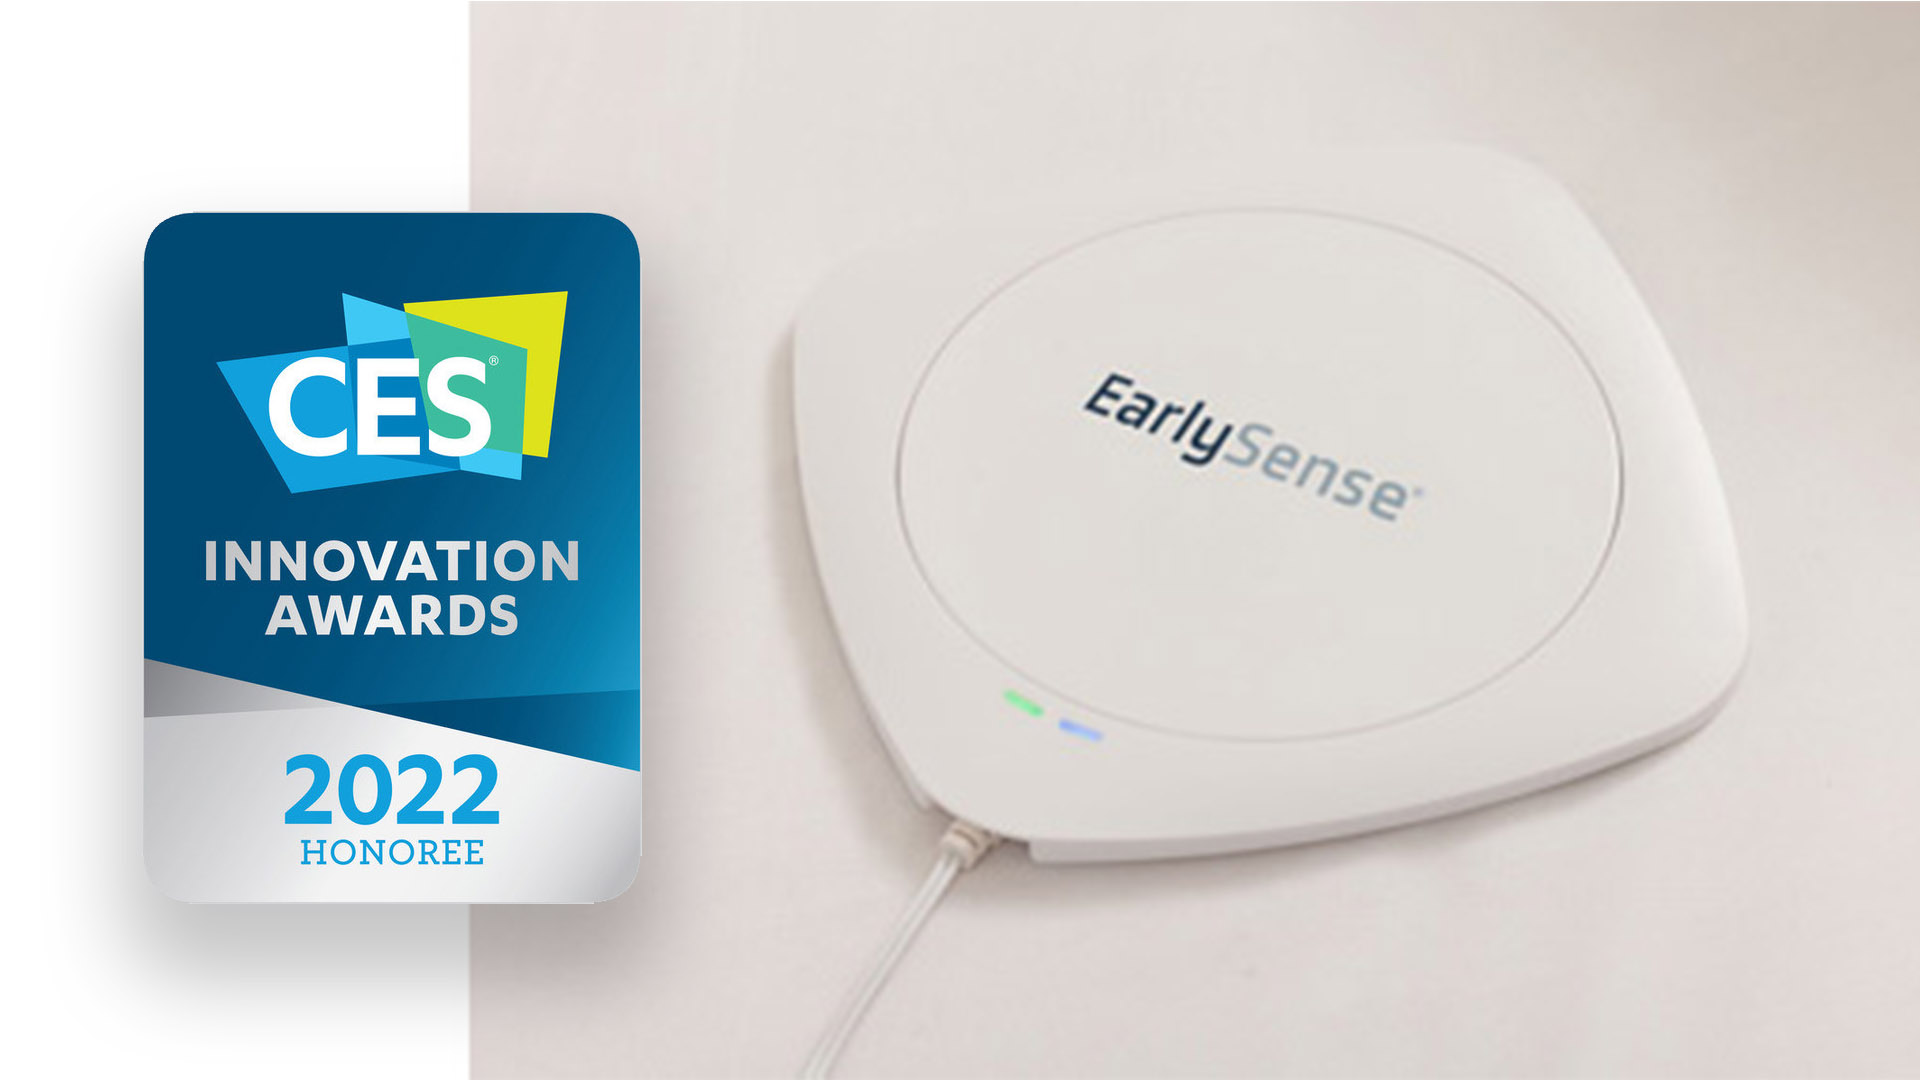 EartlySense CES 2022 innovation award honoree